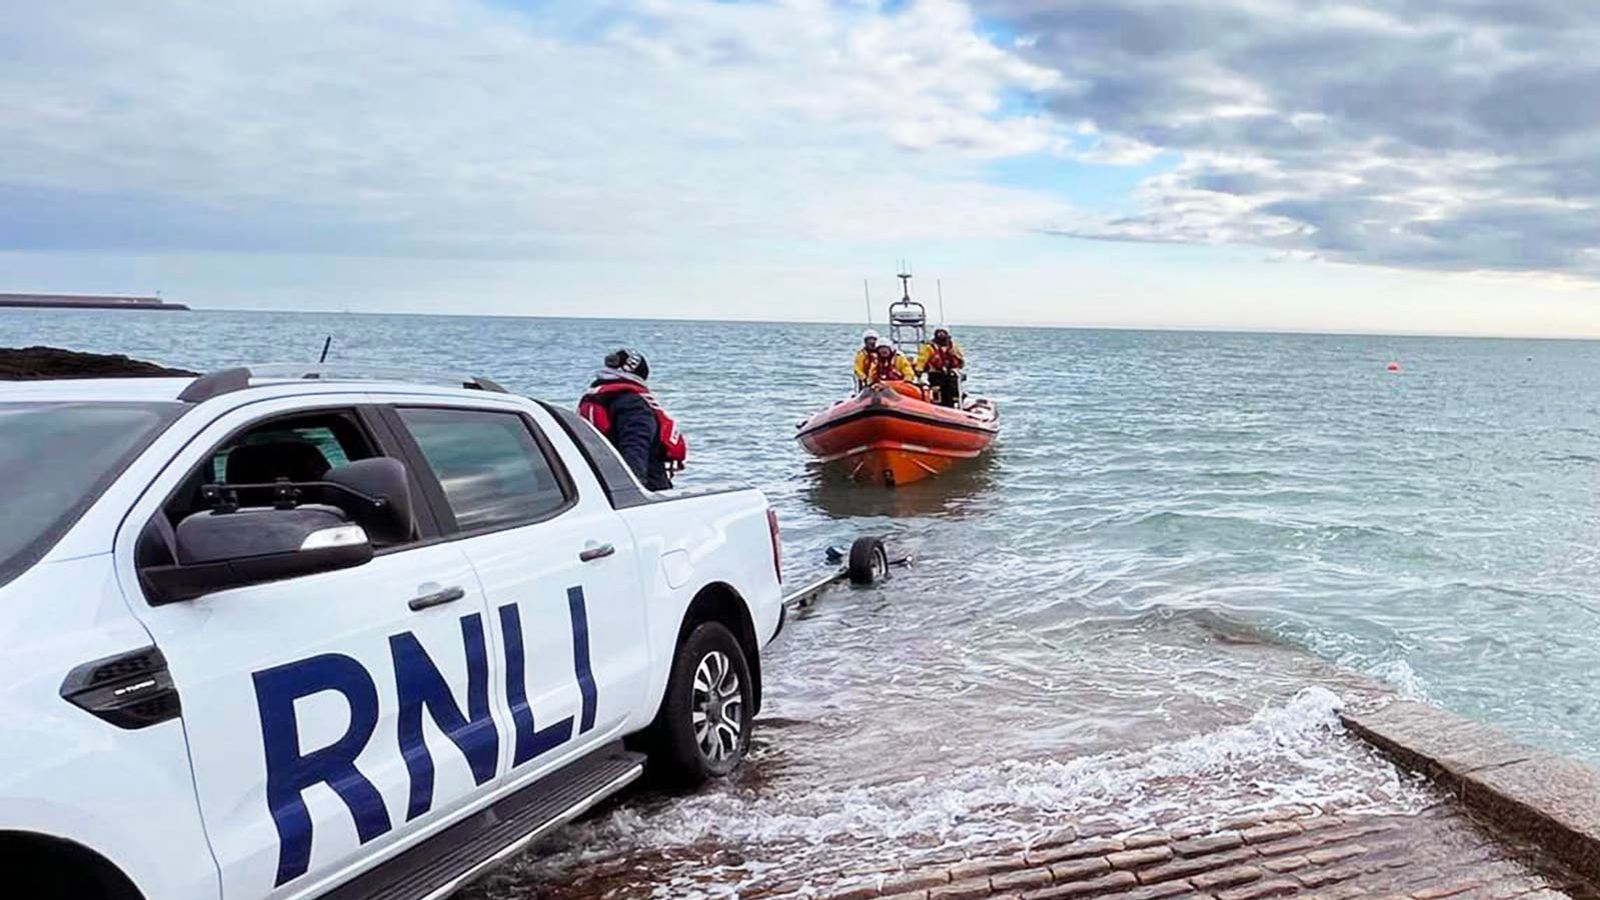 Tiga nelayan masih hilang di lepas pantai Jersey saat pencarian dibatalkan |  Berita Inggris